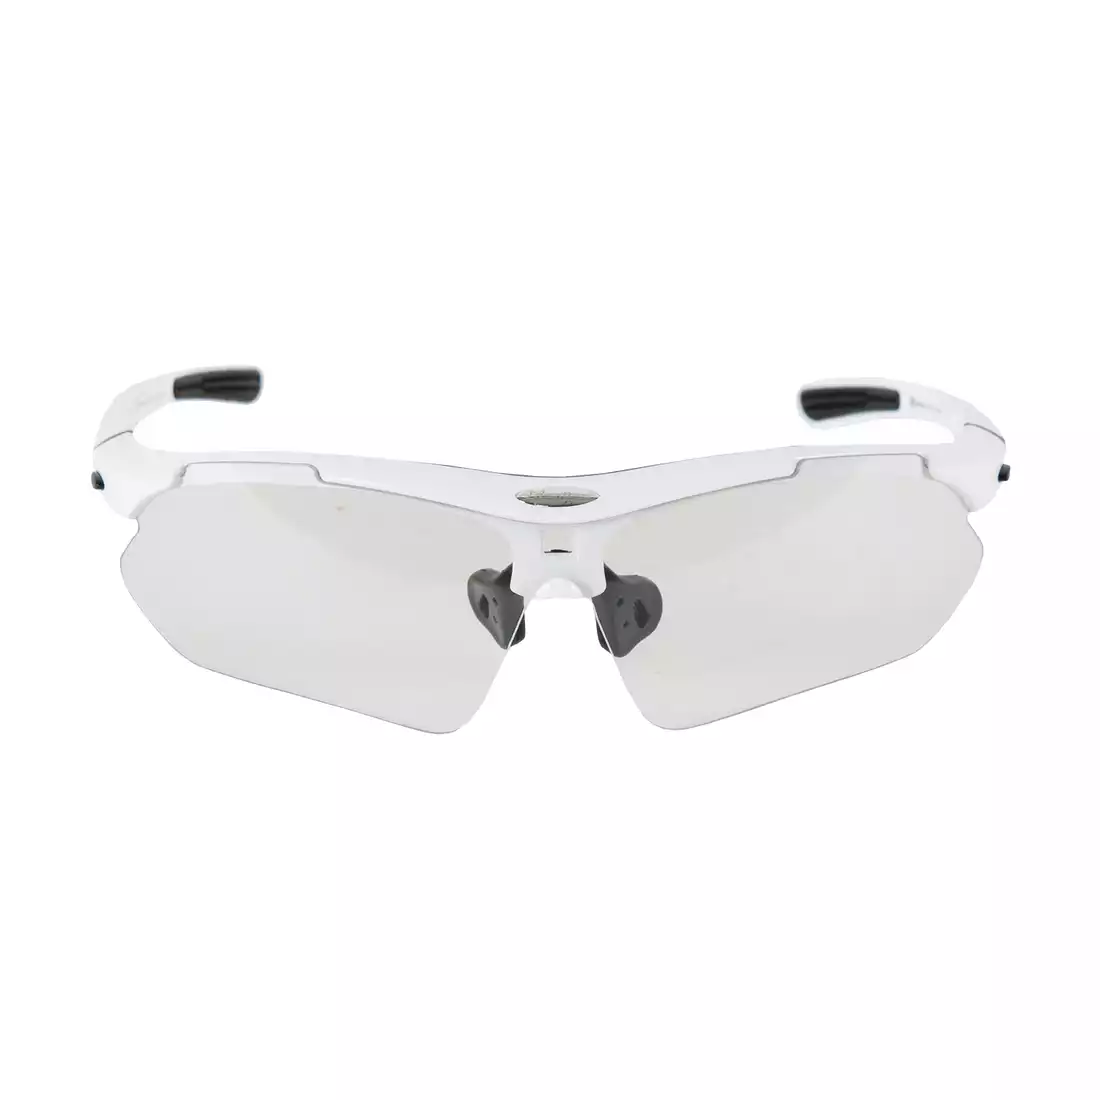 Rockbros okulary sportowe z fotochromem + wkładka korekcyjna białe 10142